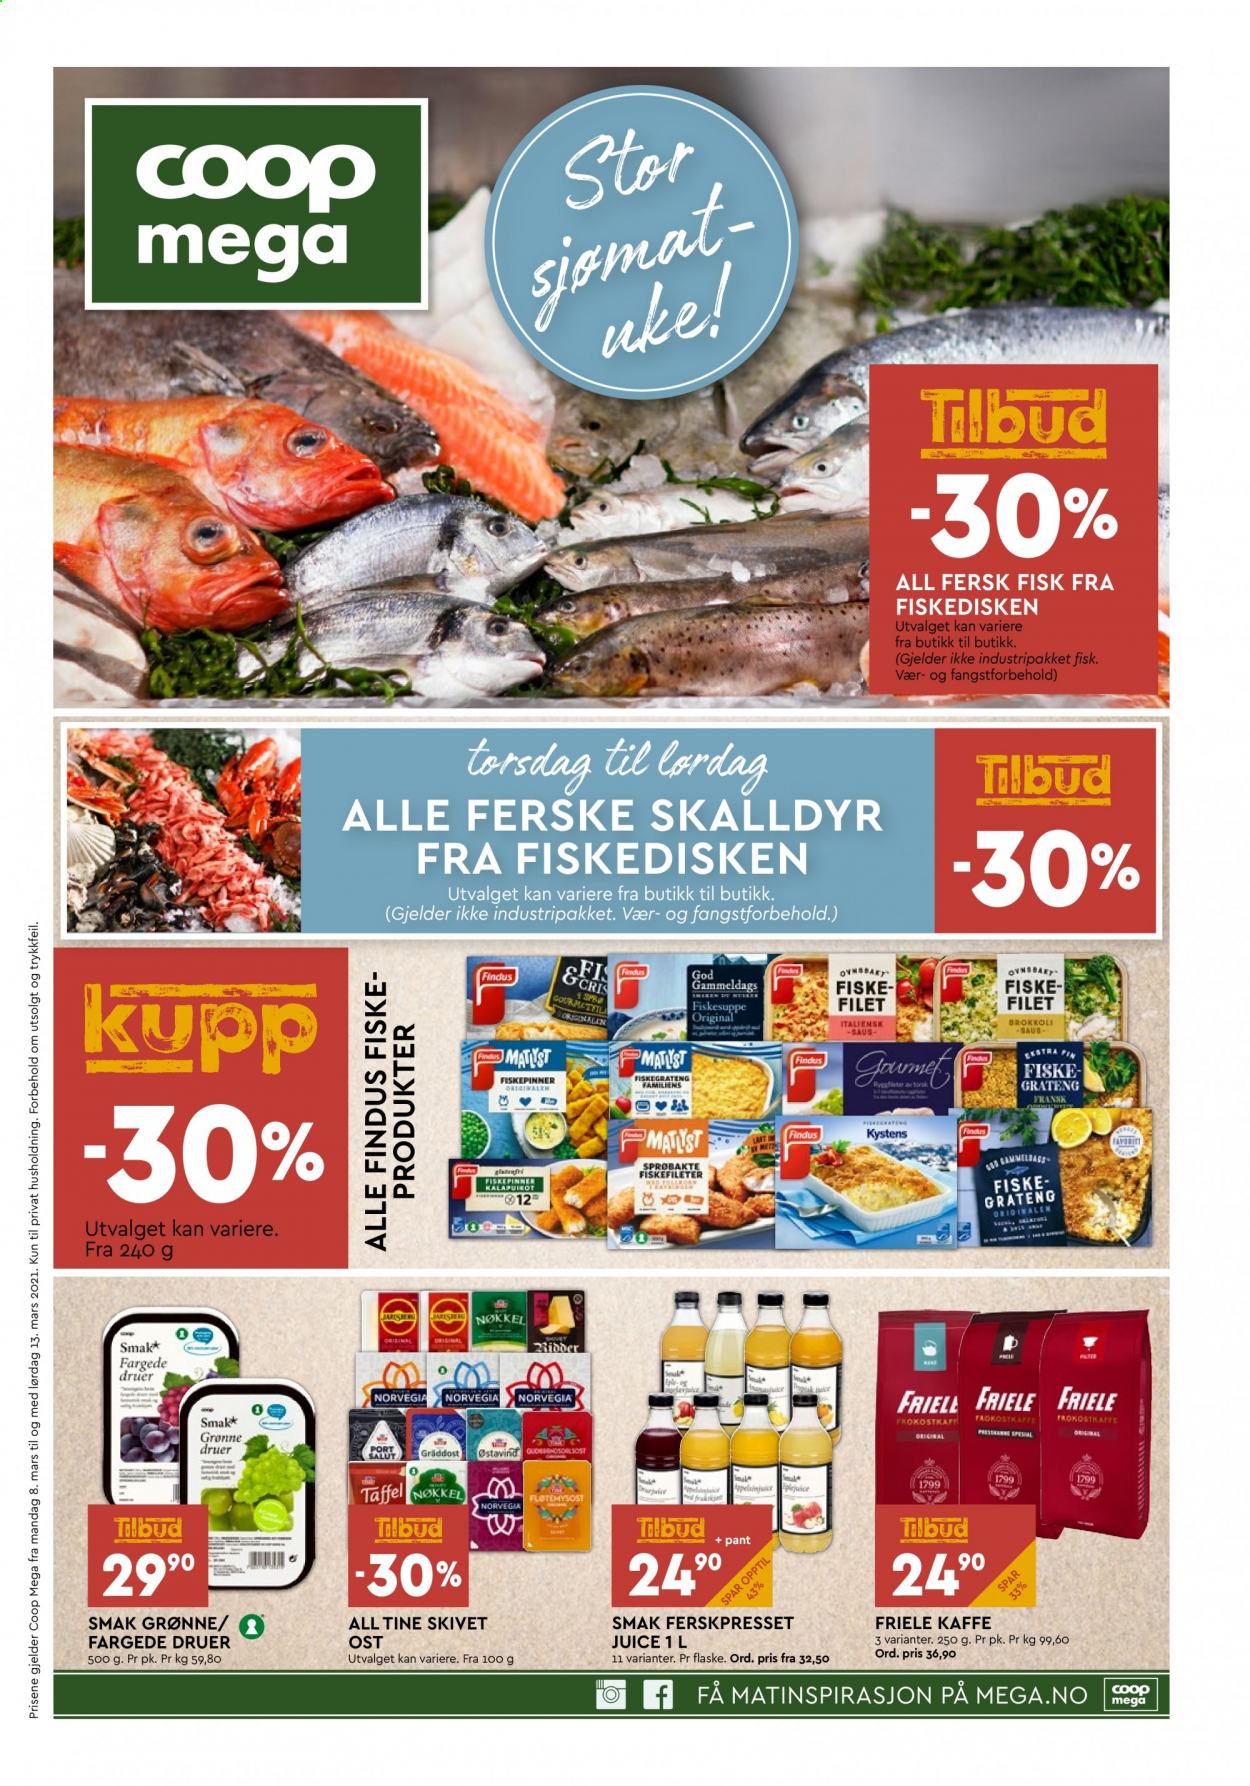 thumbnail - Kundeavis Coop Mega - 8.3.2021 - 13.3.2021 - Produkter fra tilbudsaviser - brokkoli, fisk, Norvegia, ost, Findus. Side 1.